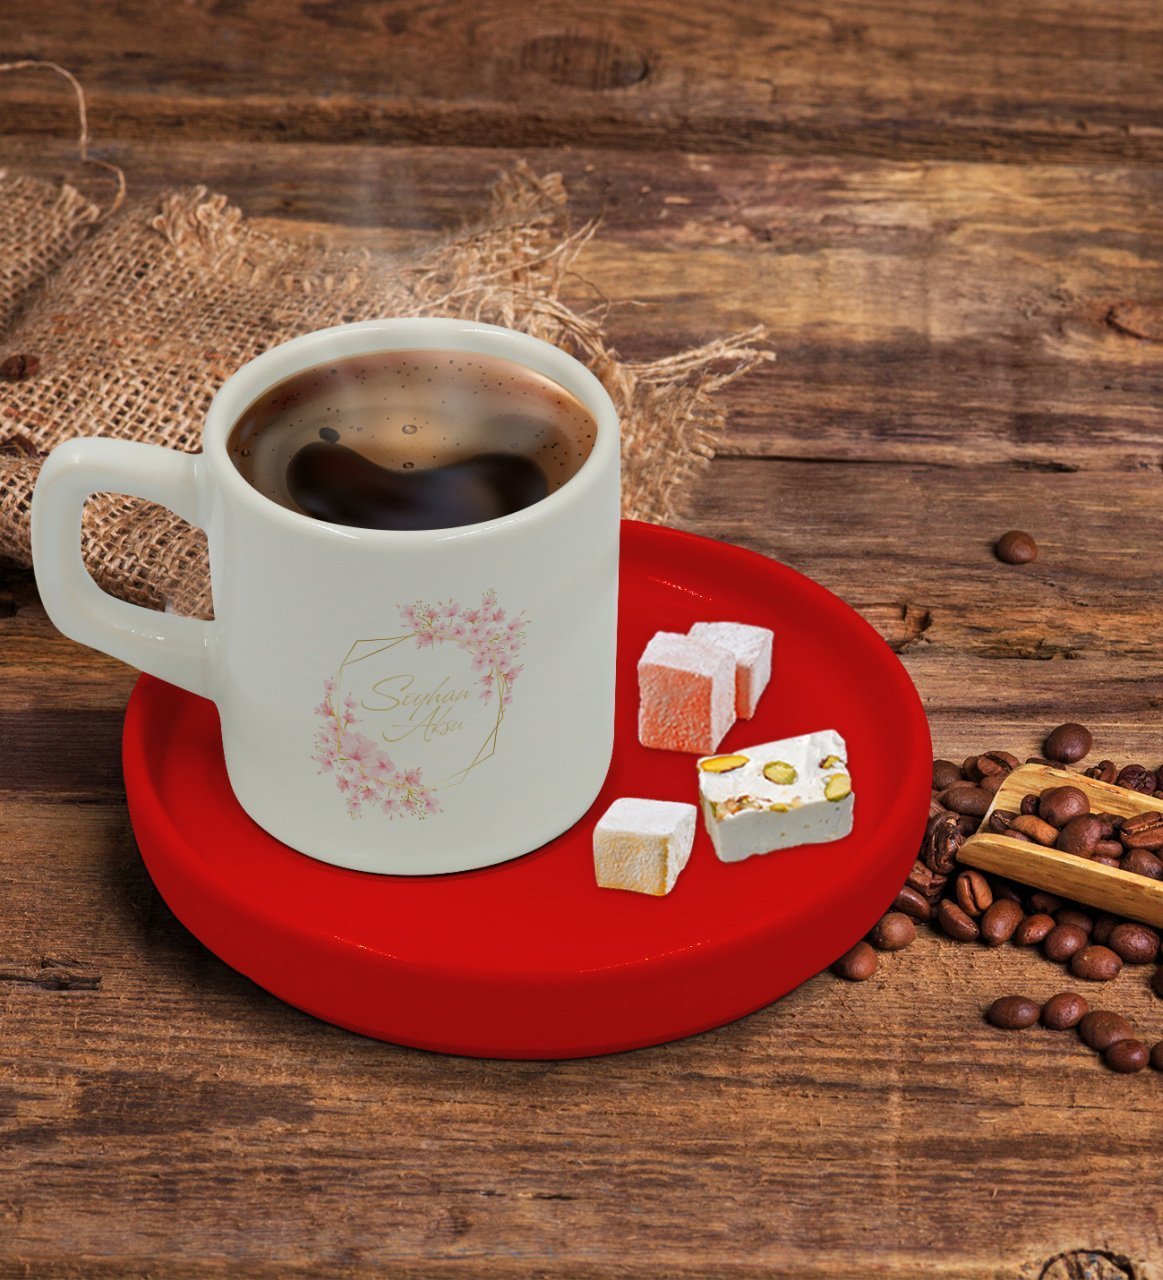 Kişiye Özel Kırmızı Sunum Tabaklı Çiçek Tasarımlı Türk Kahvesi Fincanı Model 6